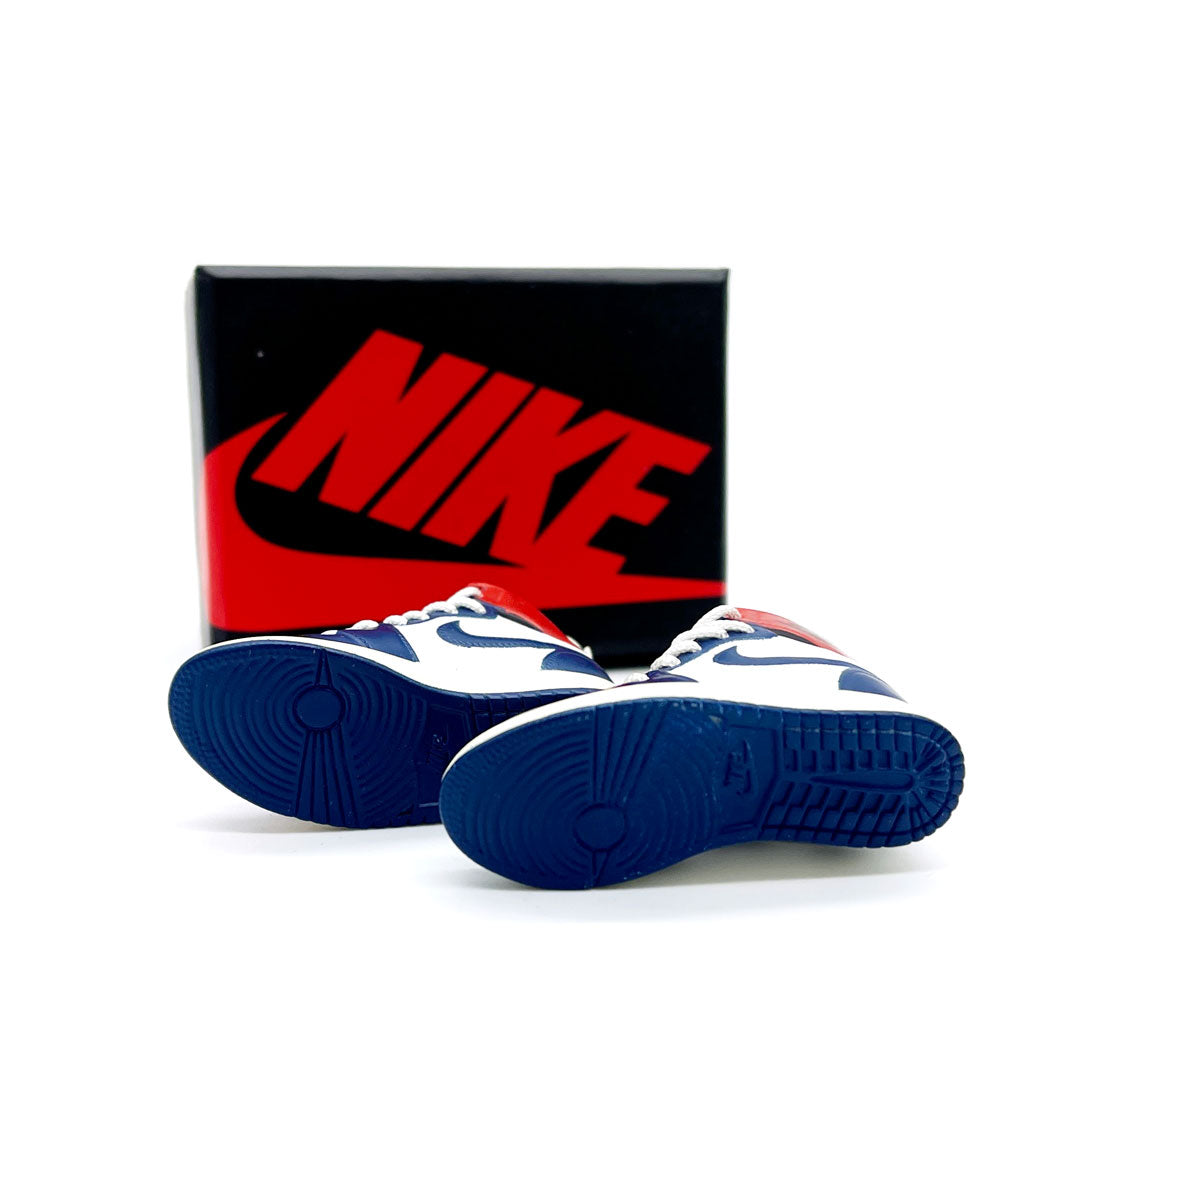 3D Sneaker Keychain- Air Jordan 1 High Union Blue Toe Pair